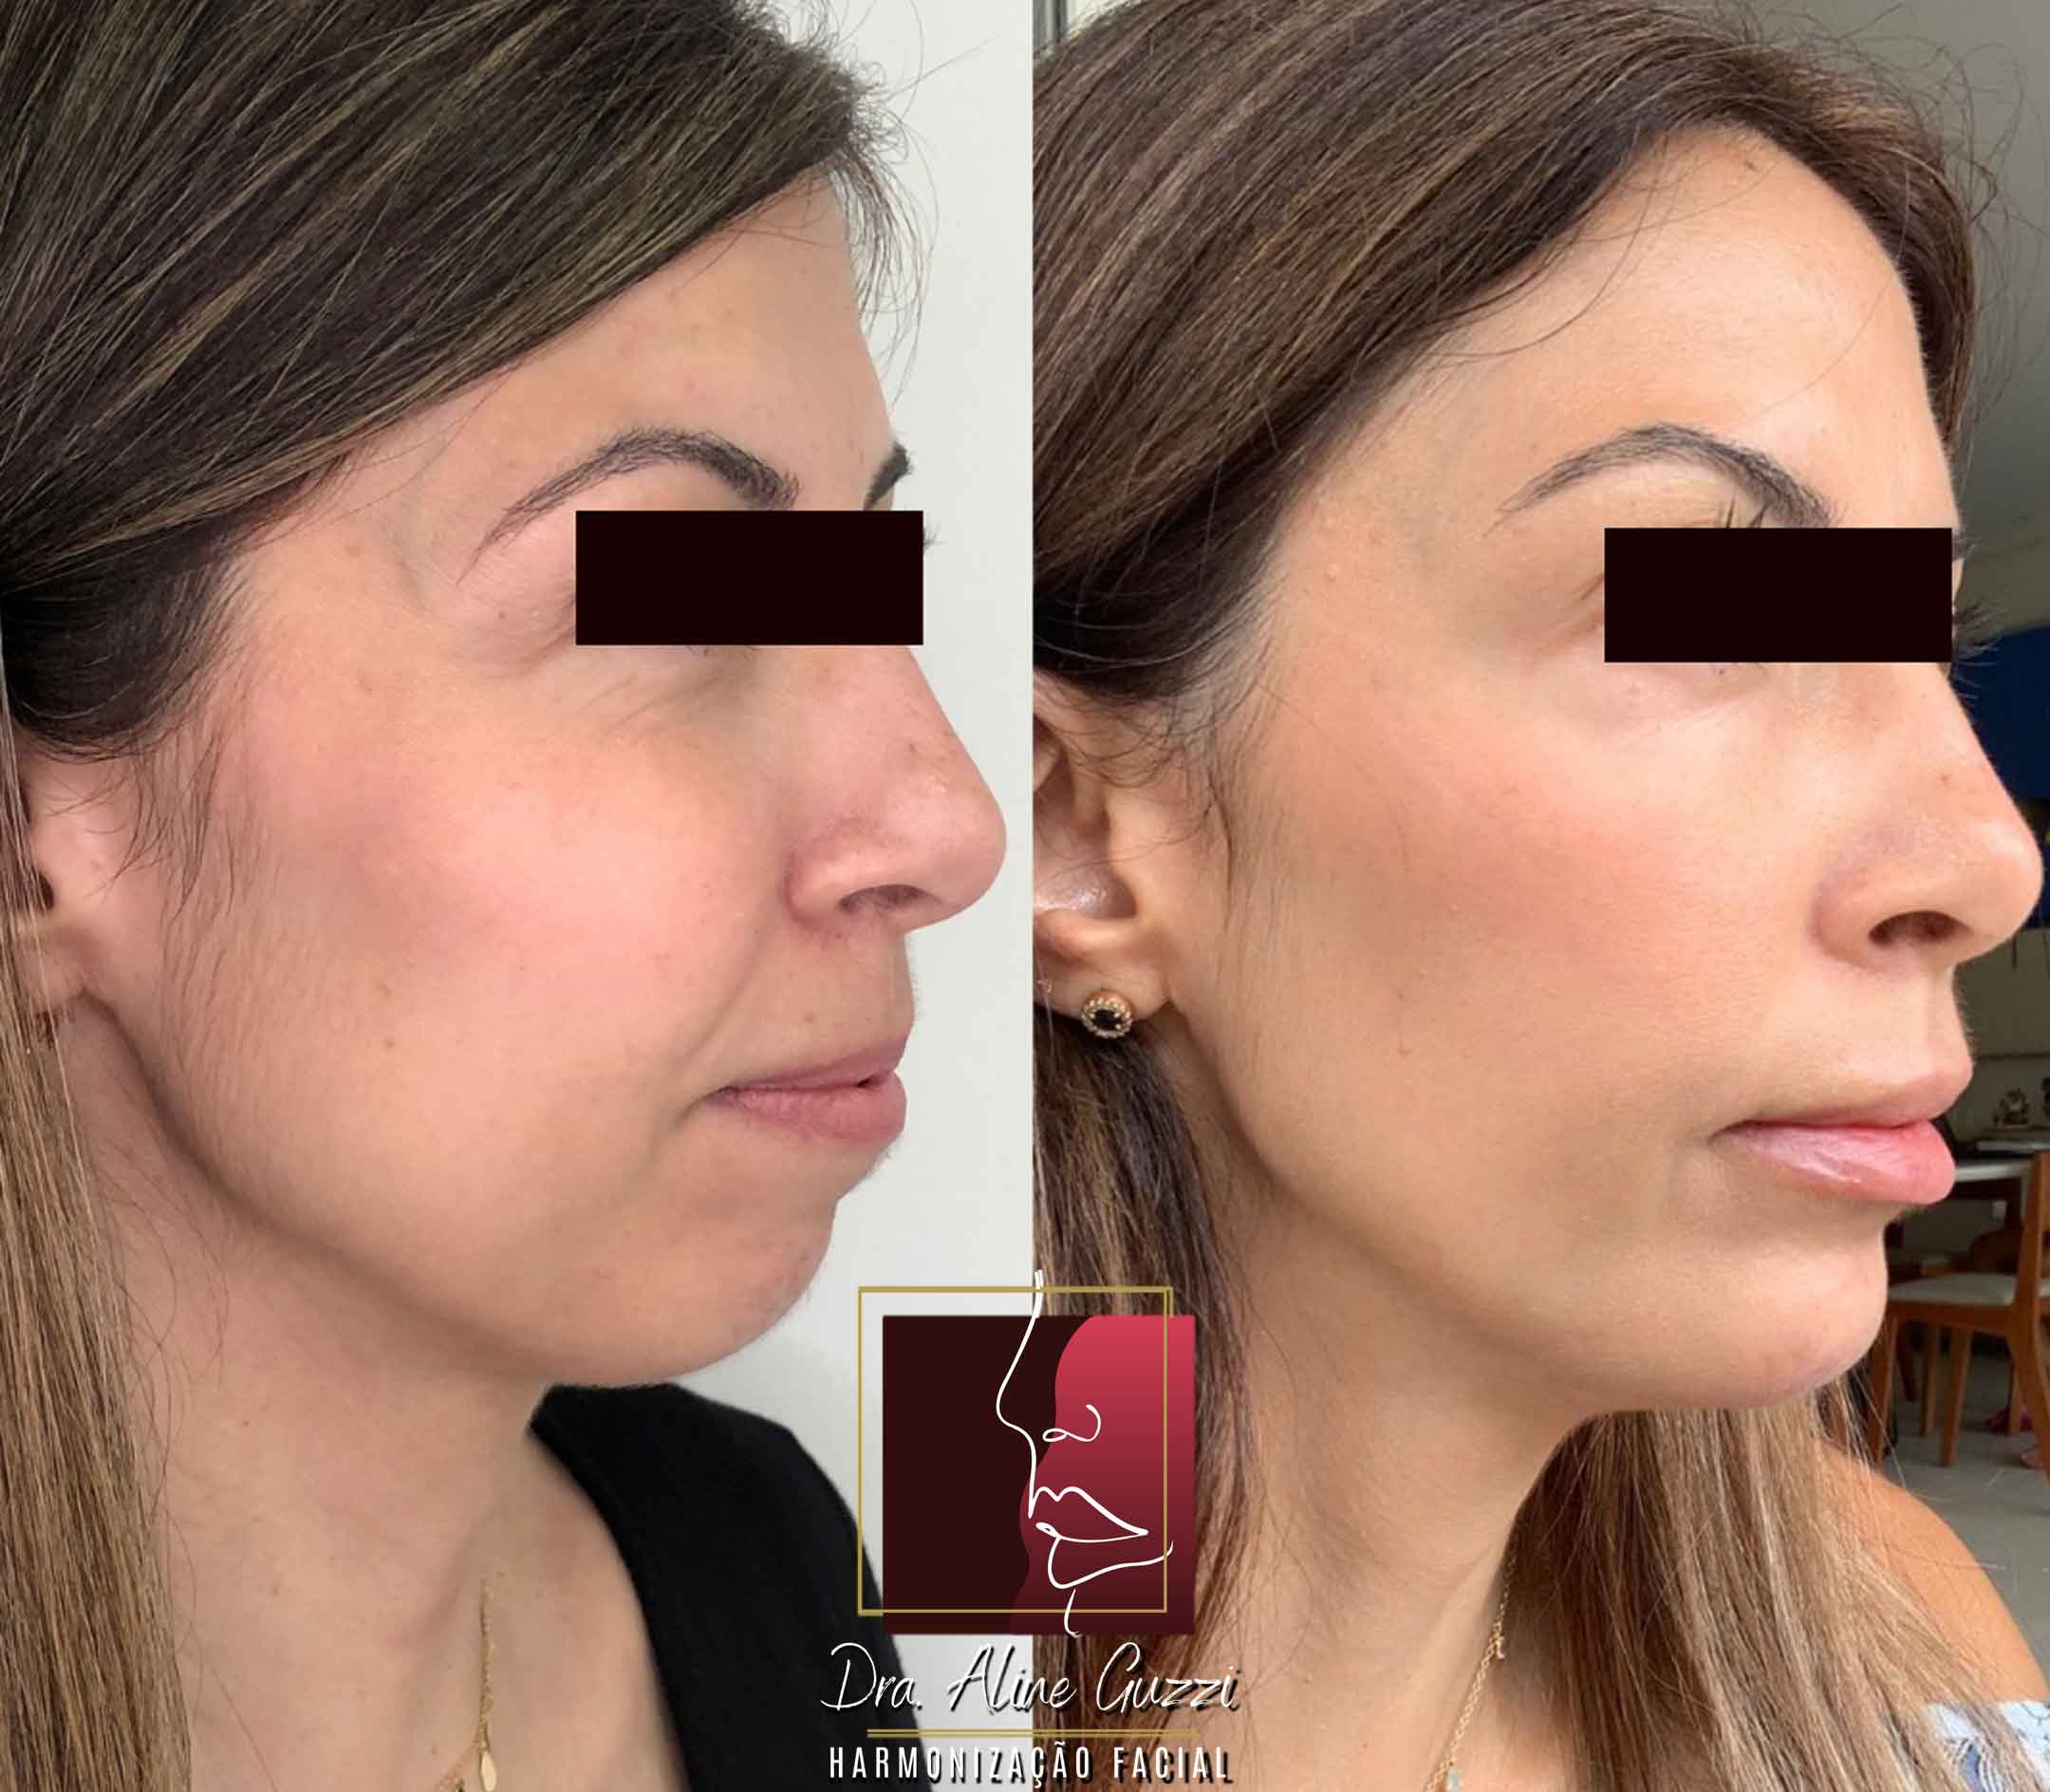 Harmonização Facial - Dra. Aline Guzzi: Caso Clínico de Preenchimento Facial